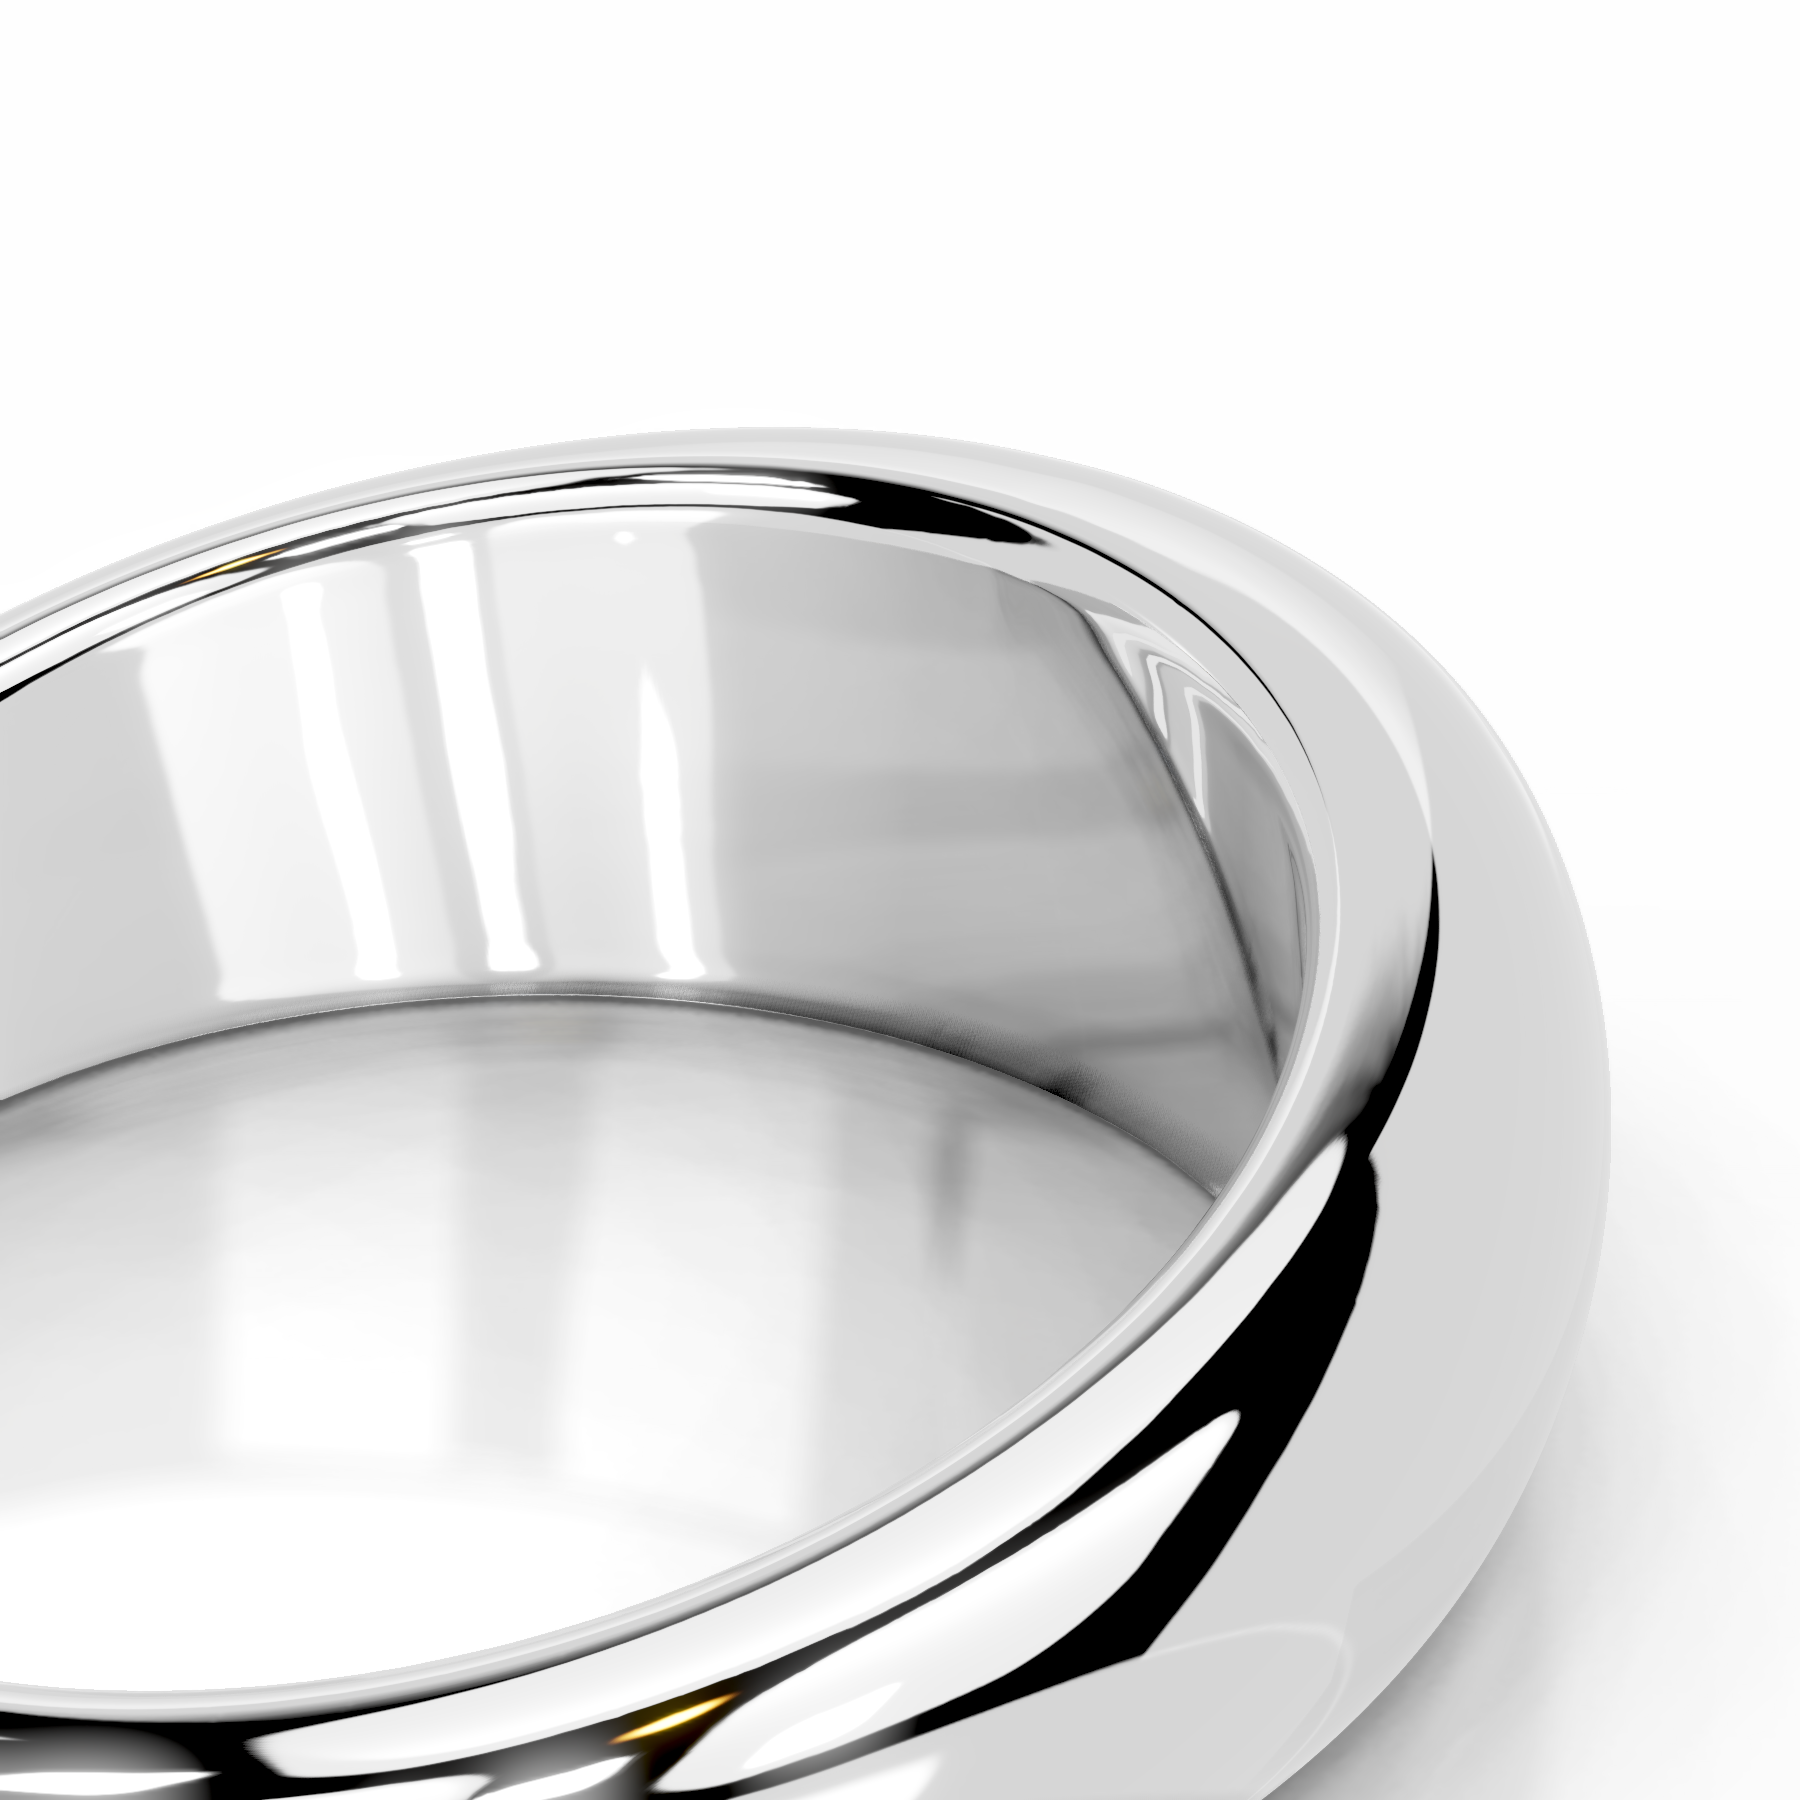 Amari Diamond Engagement Ring   (1 Carat) -18K White Gold